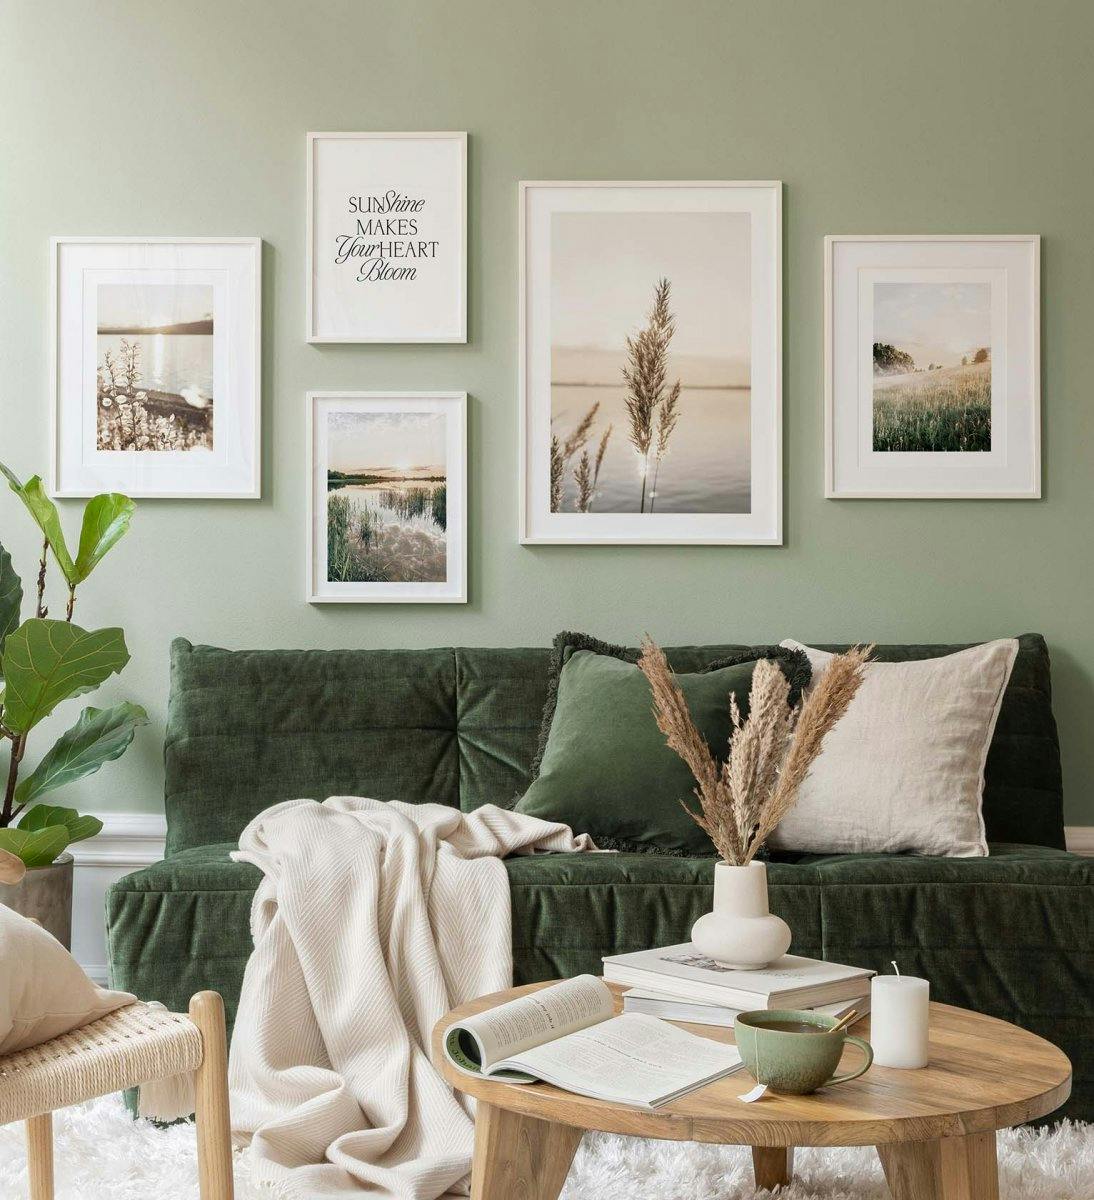 Zielone fotografie krajobrazowe stworzą spokojną atmosferę w salonie